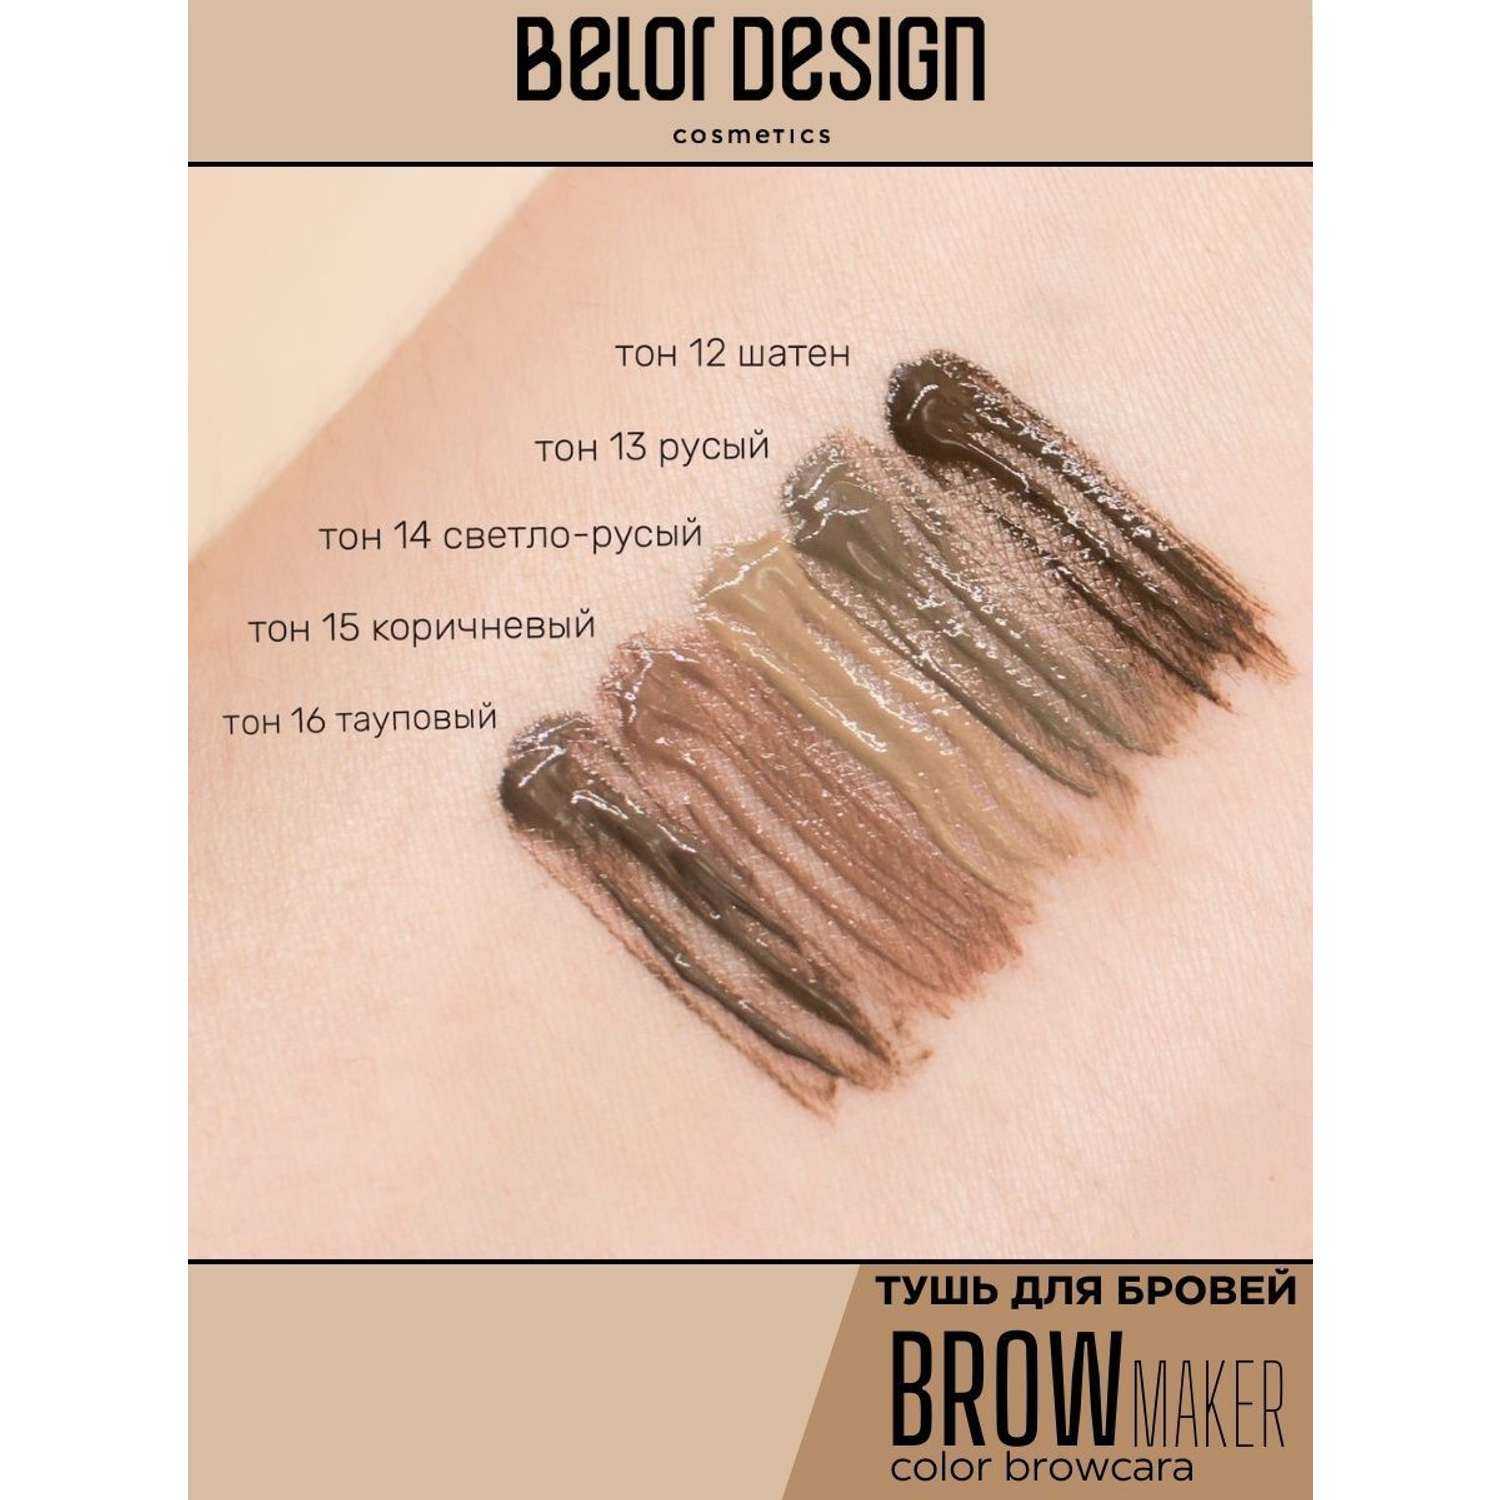 Тушь для бровей Belor Design BROW MAKER тон 11 - фото 6